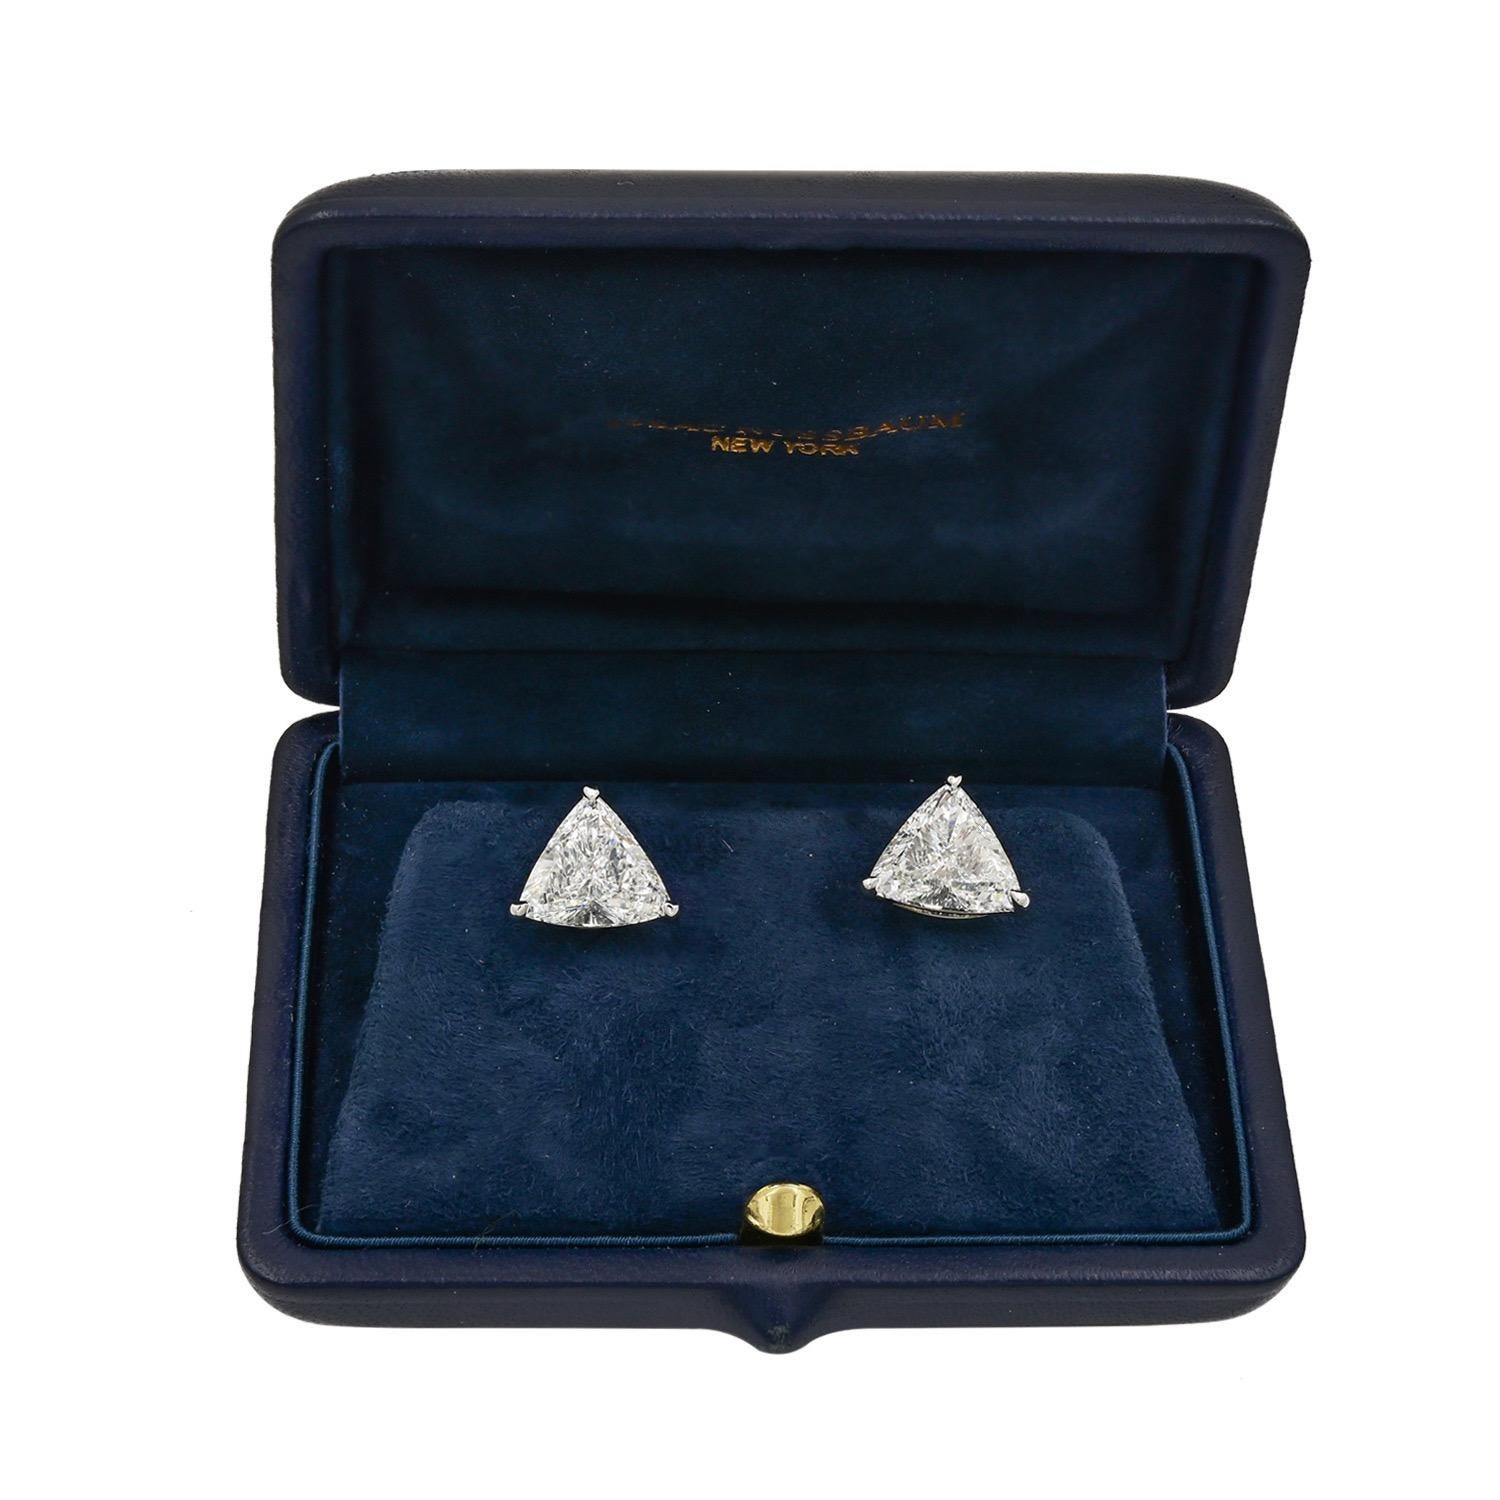 Trilliant diamond studs 3.44 -3.14 carat 